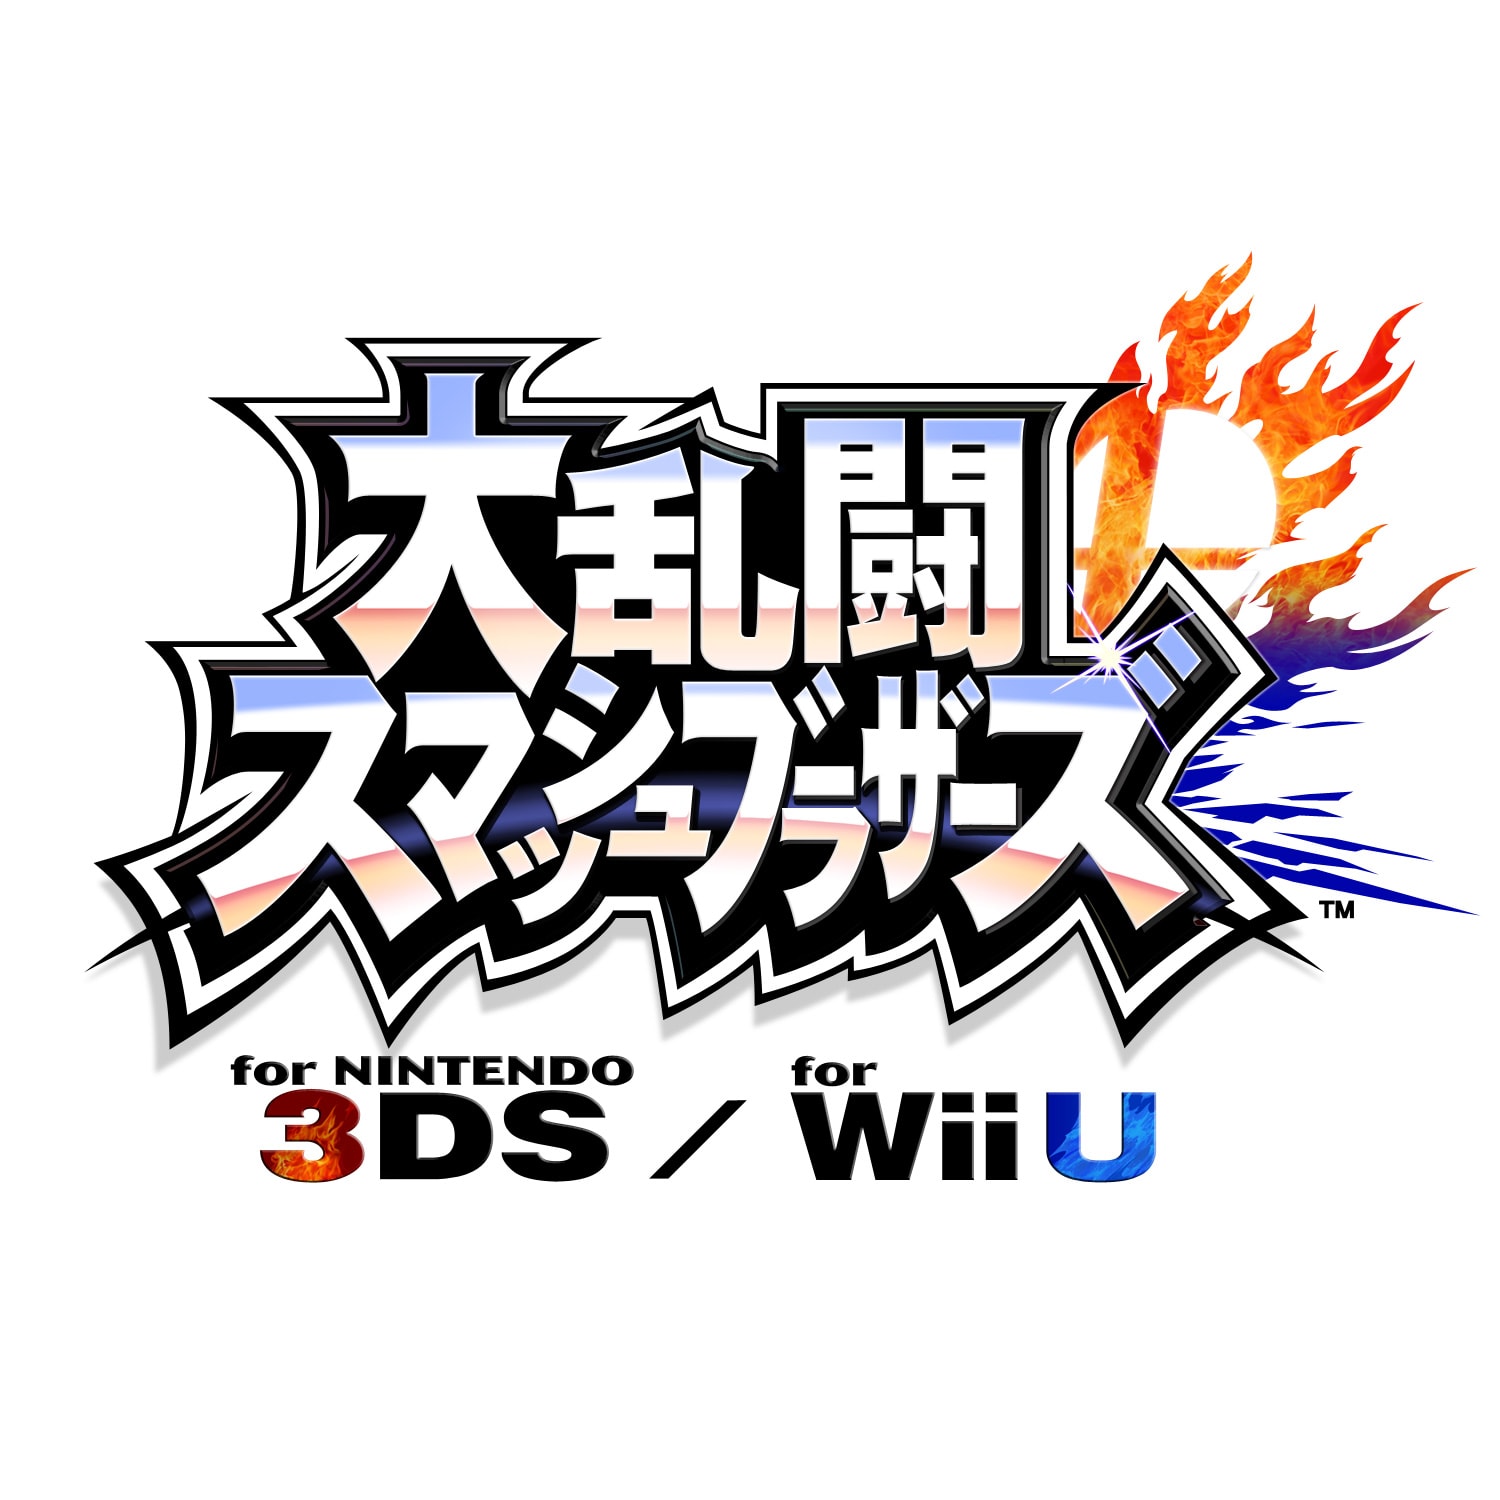 大乱闘スマッシュブラザーズ for Nintendo 3DS / Wii Uに登場するファイターの元ネタまとめ【スマブラシリーズ】